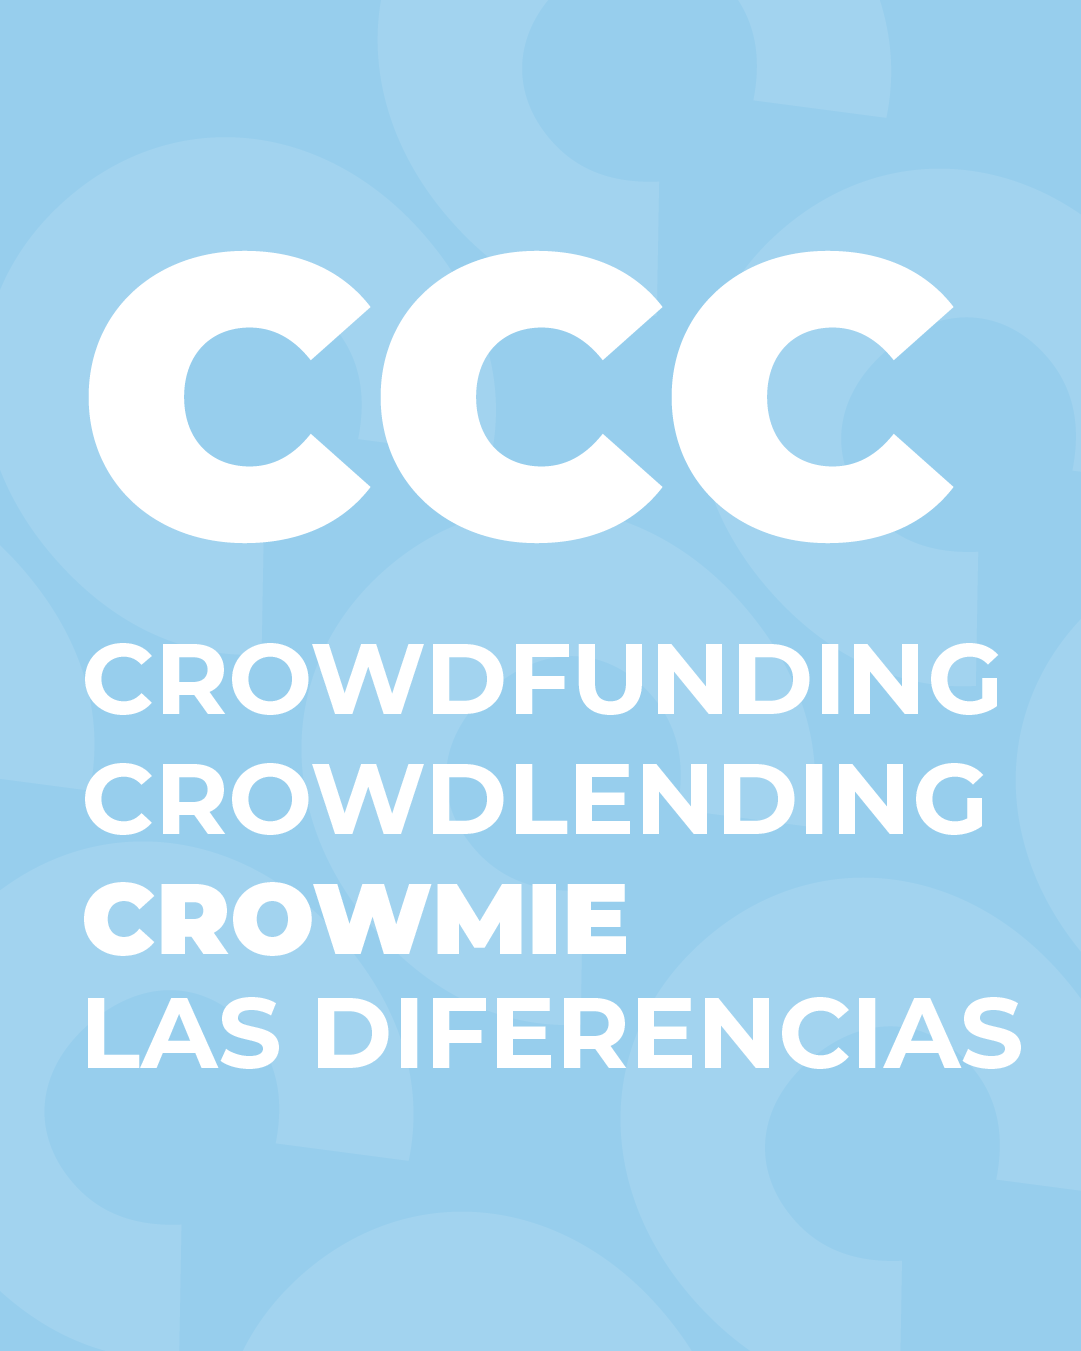 Las diferencias entre crowdlending y crowdfunding